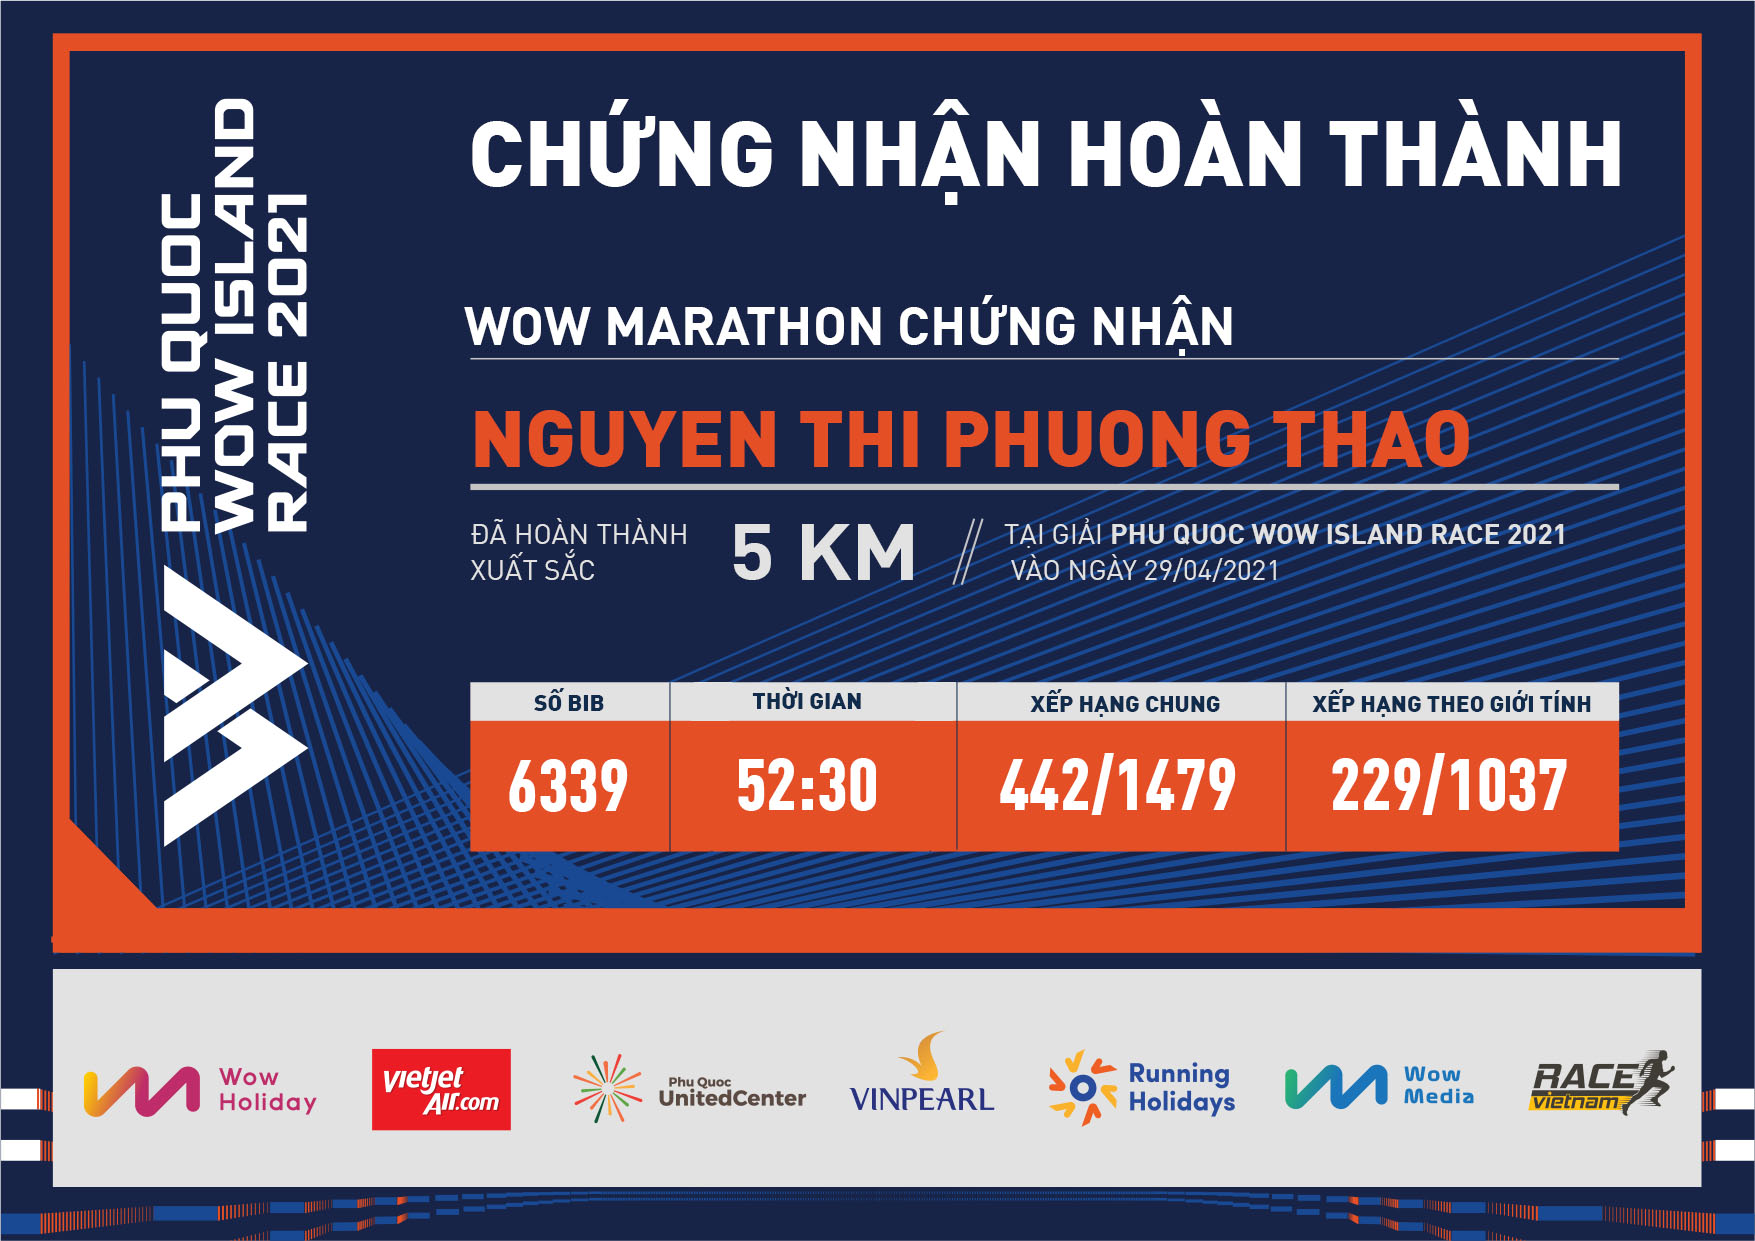 6339 - Nguyen Thi Phuong Thao